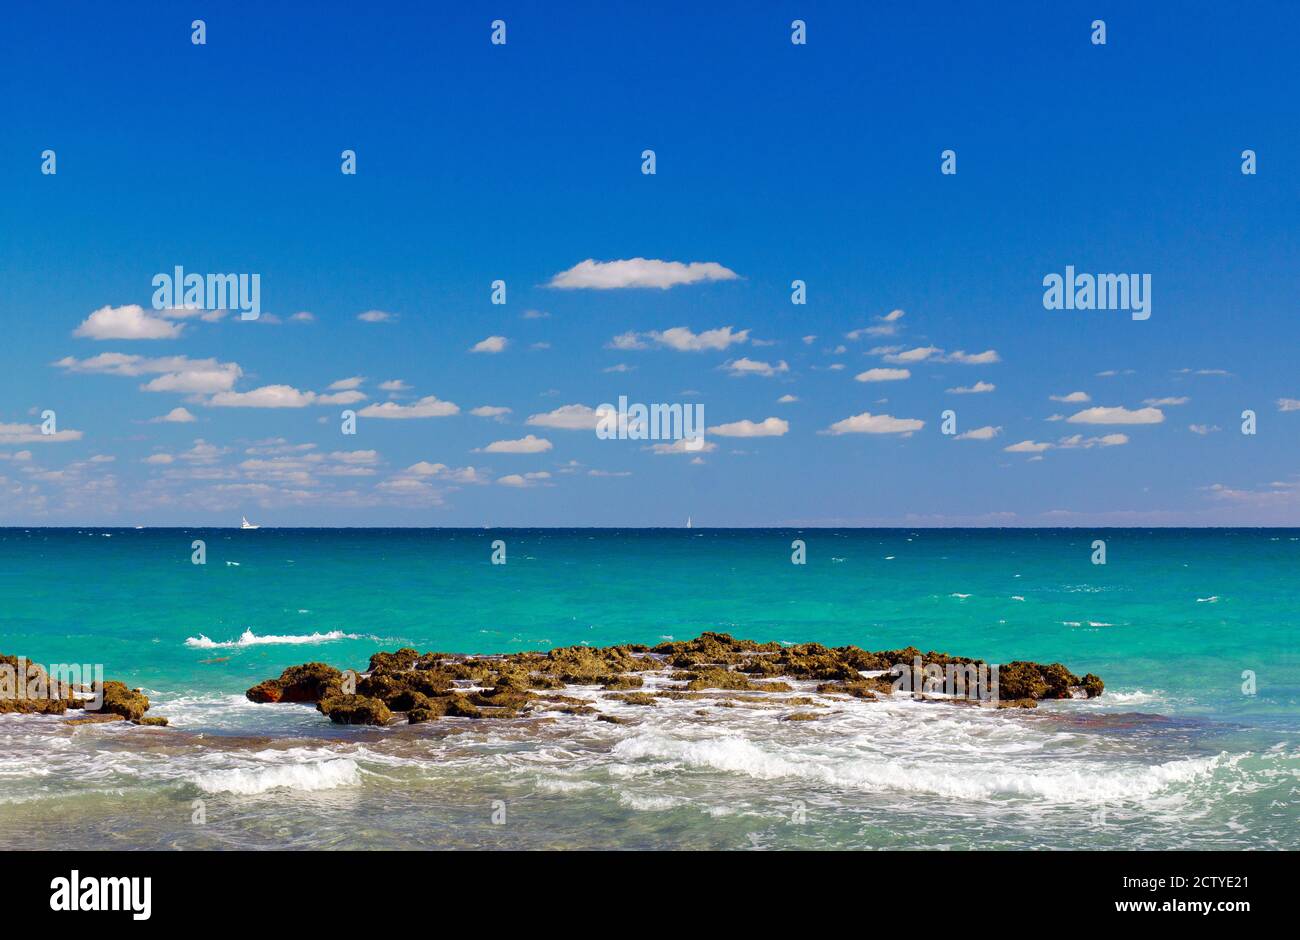 Surf on the beach, West Palm Beach, Florida, USA Stock Photo